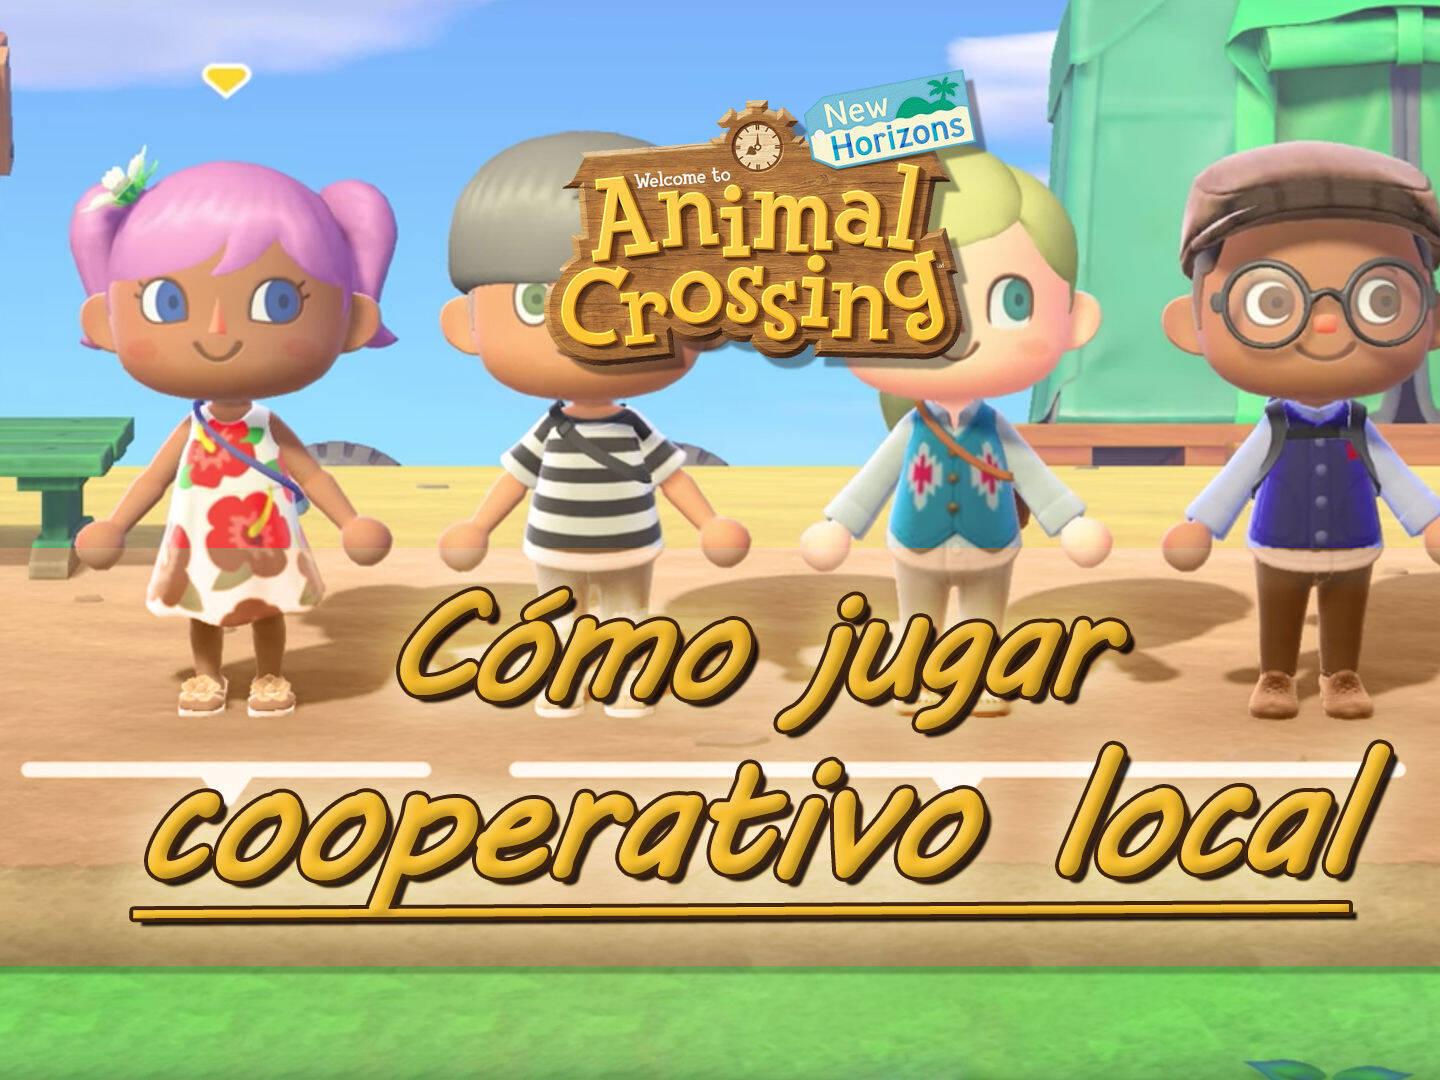 Animal Crossing New Horizons: ¿Cómo jugar en cooperativo local?